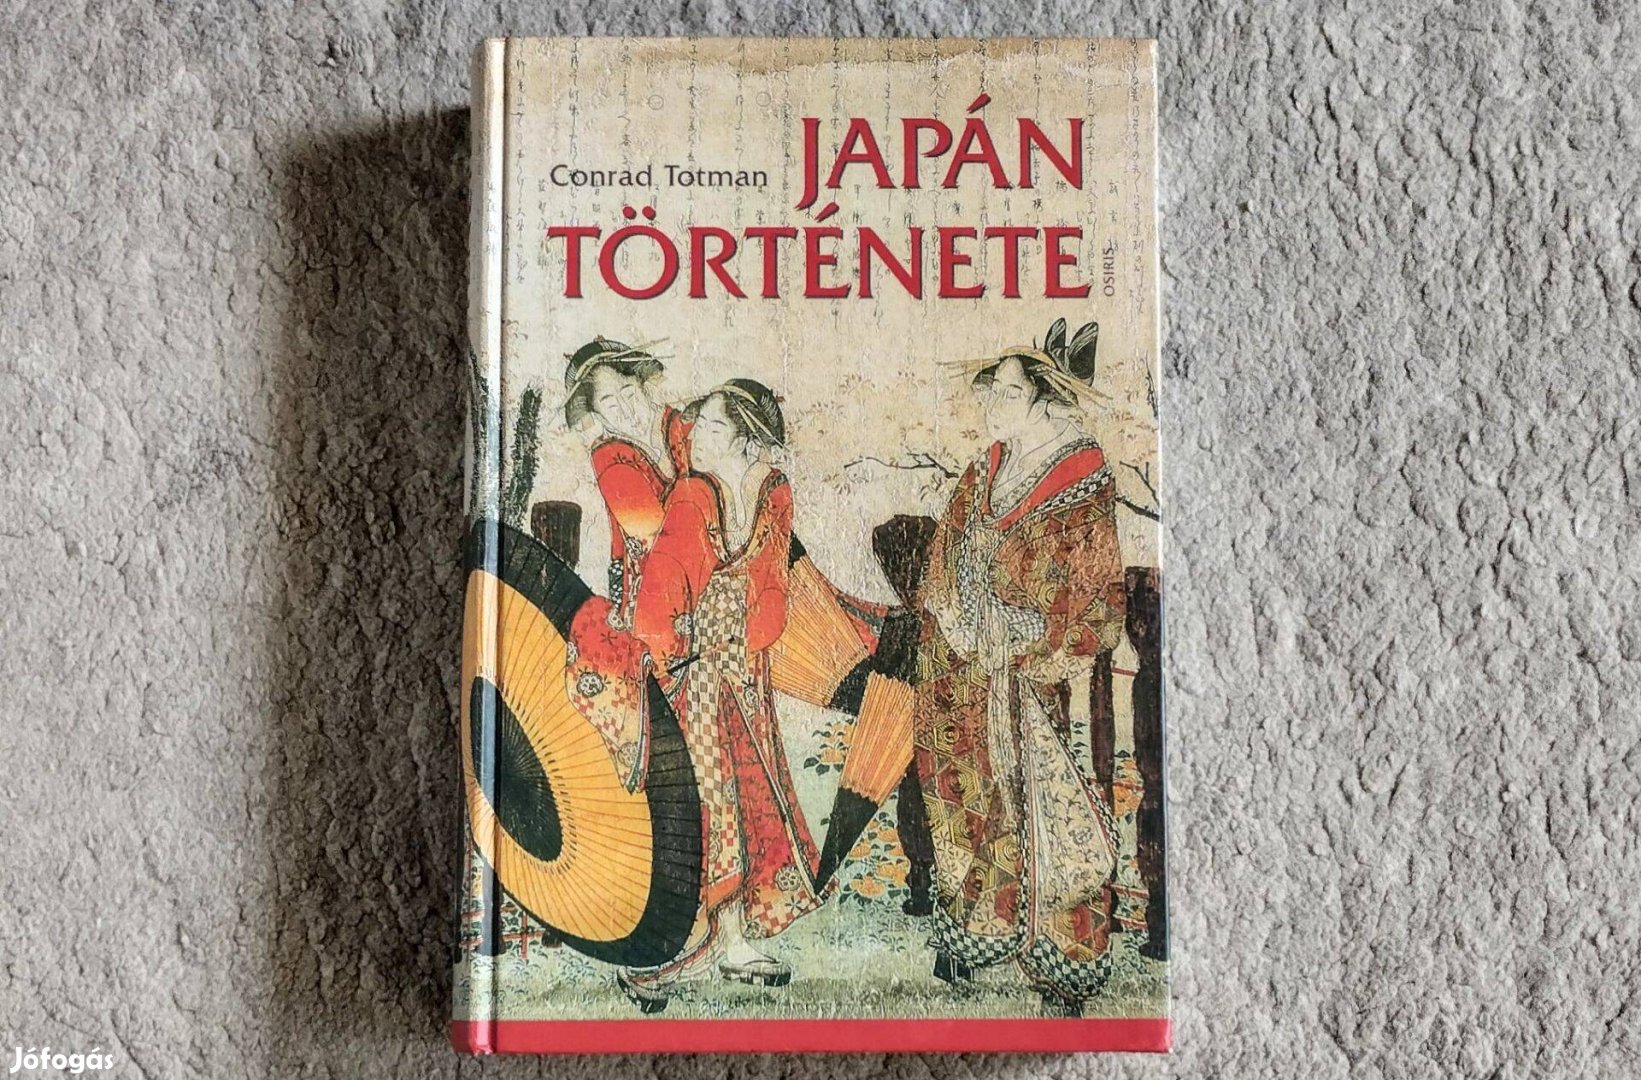 Japán története - Conrad Totman - újszerű állapotban